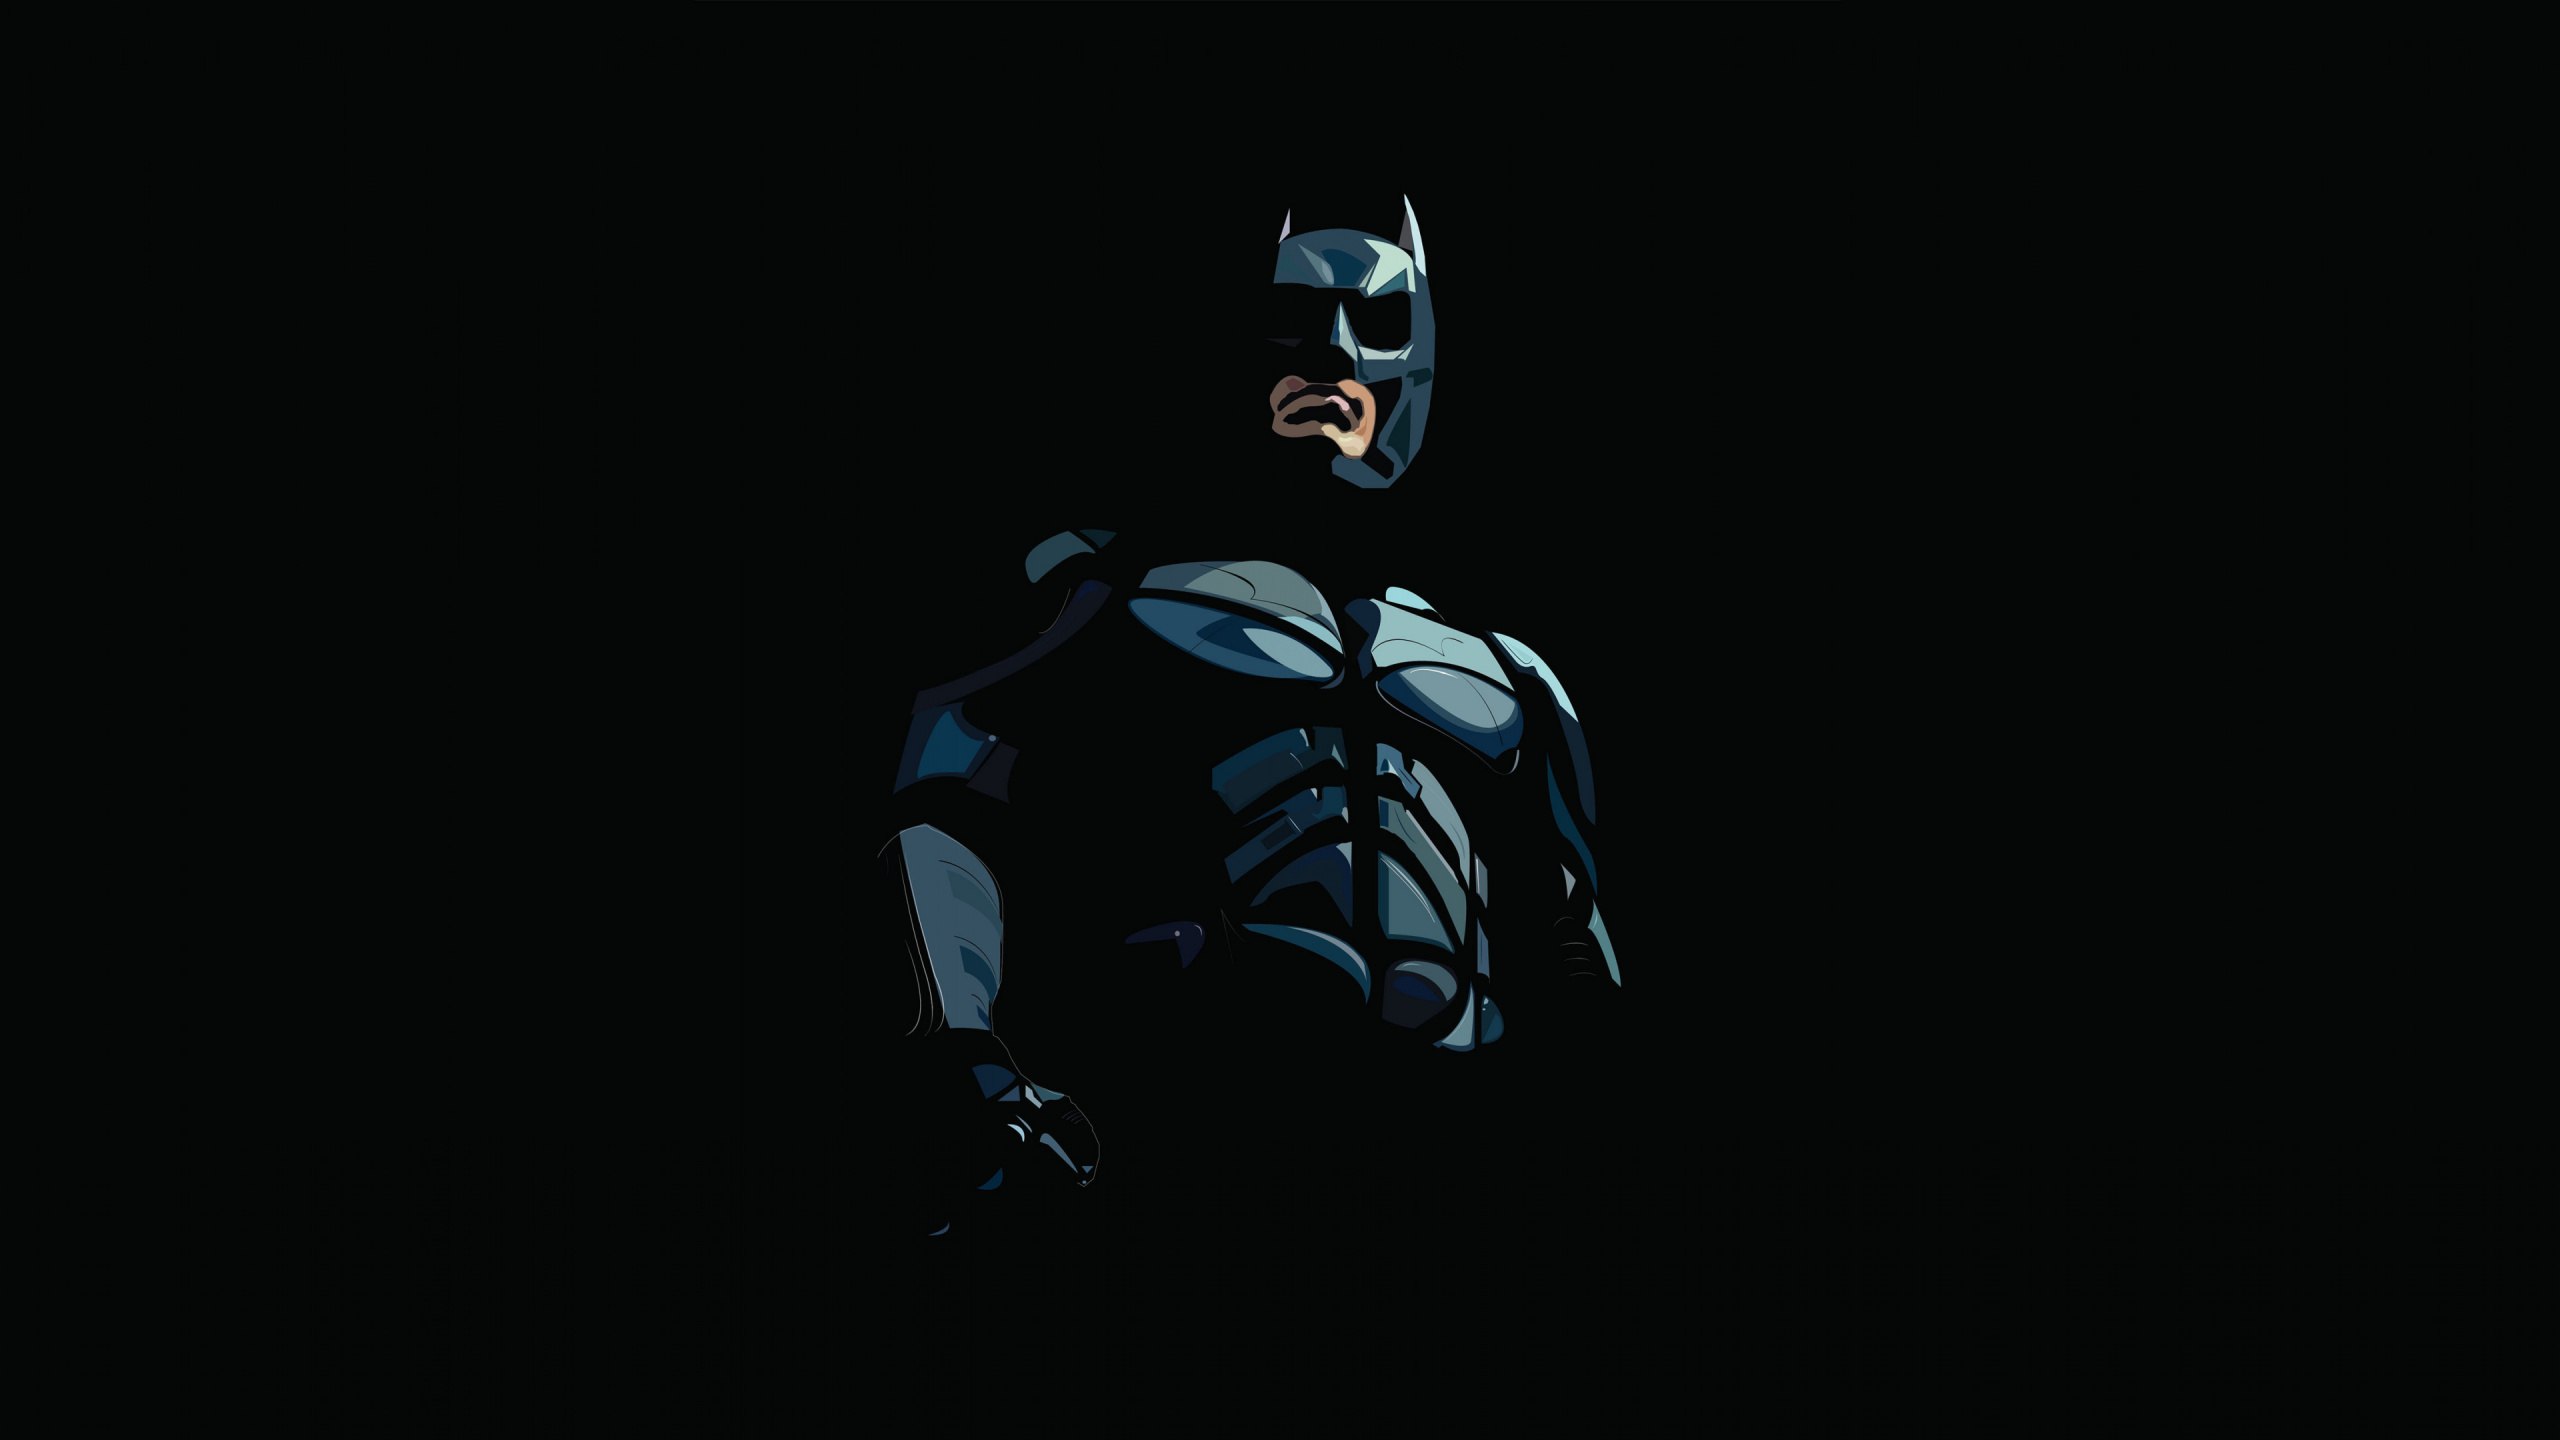 蝙蝠侠, Dc漫画, 图形设计, 画家, 虚构的人物 壁纸 2560x1440 允许